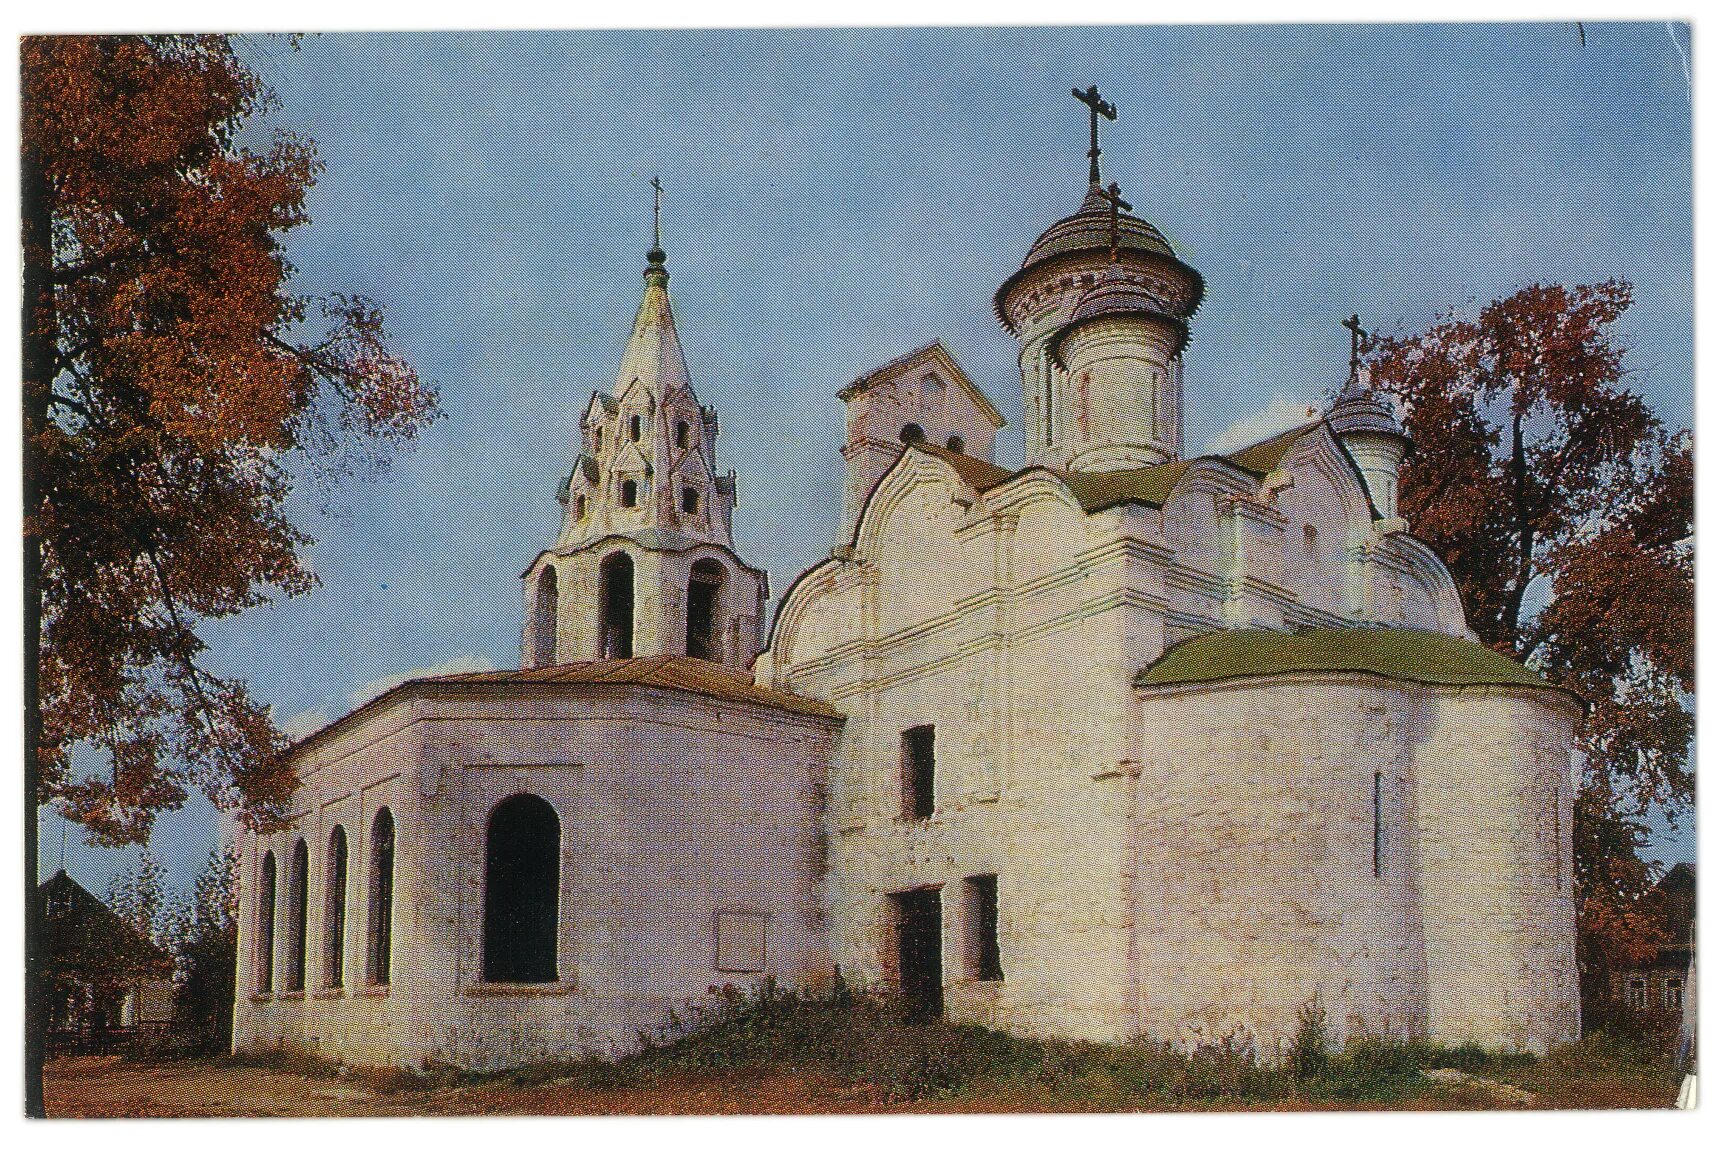 Развитие архитектуры 16 века в россии